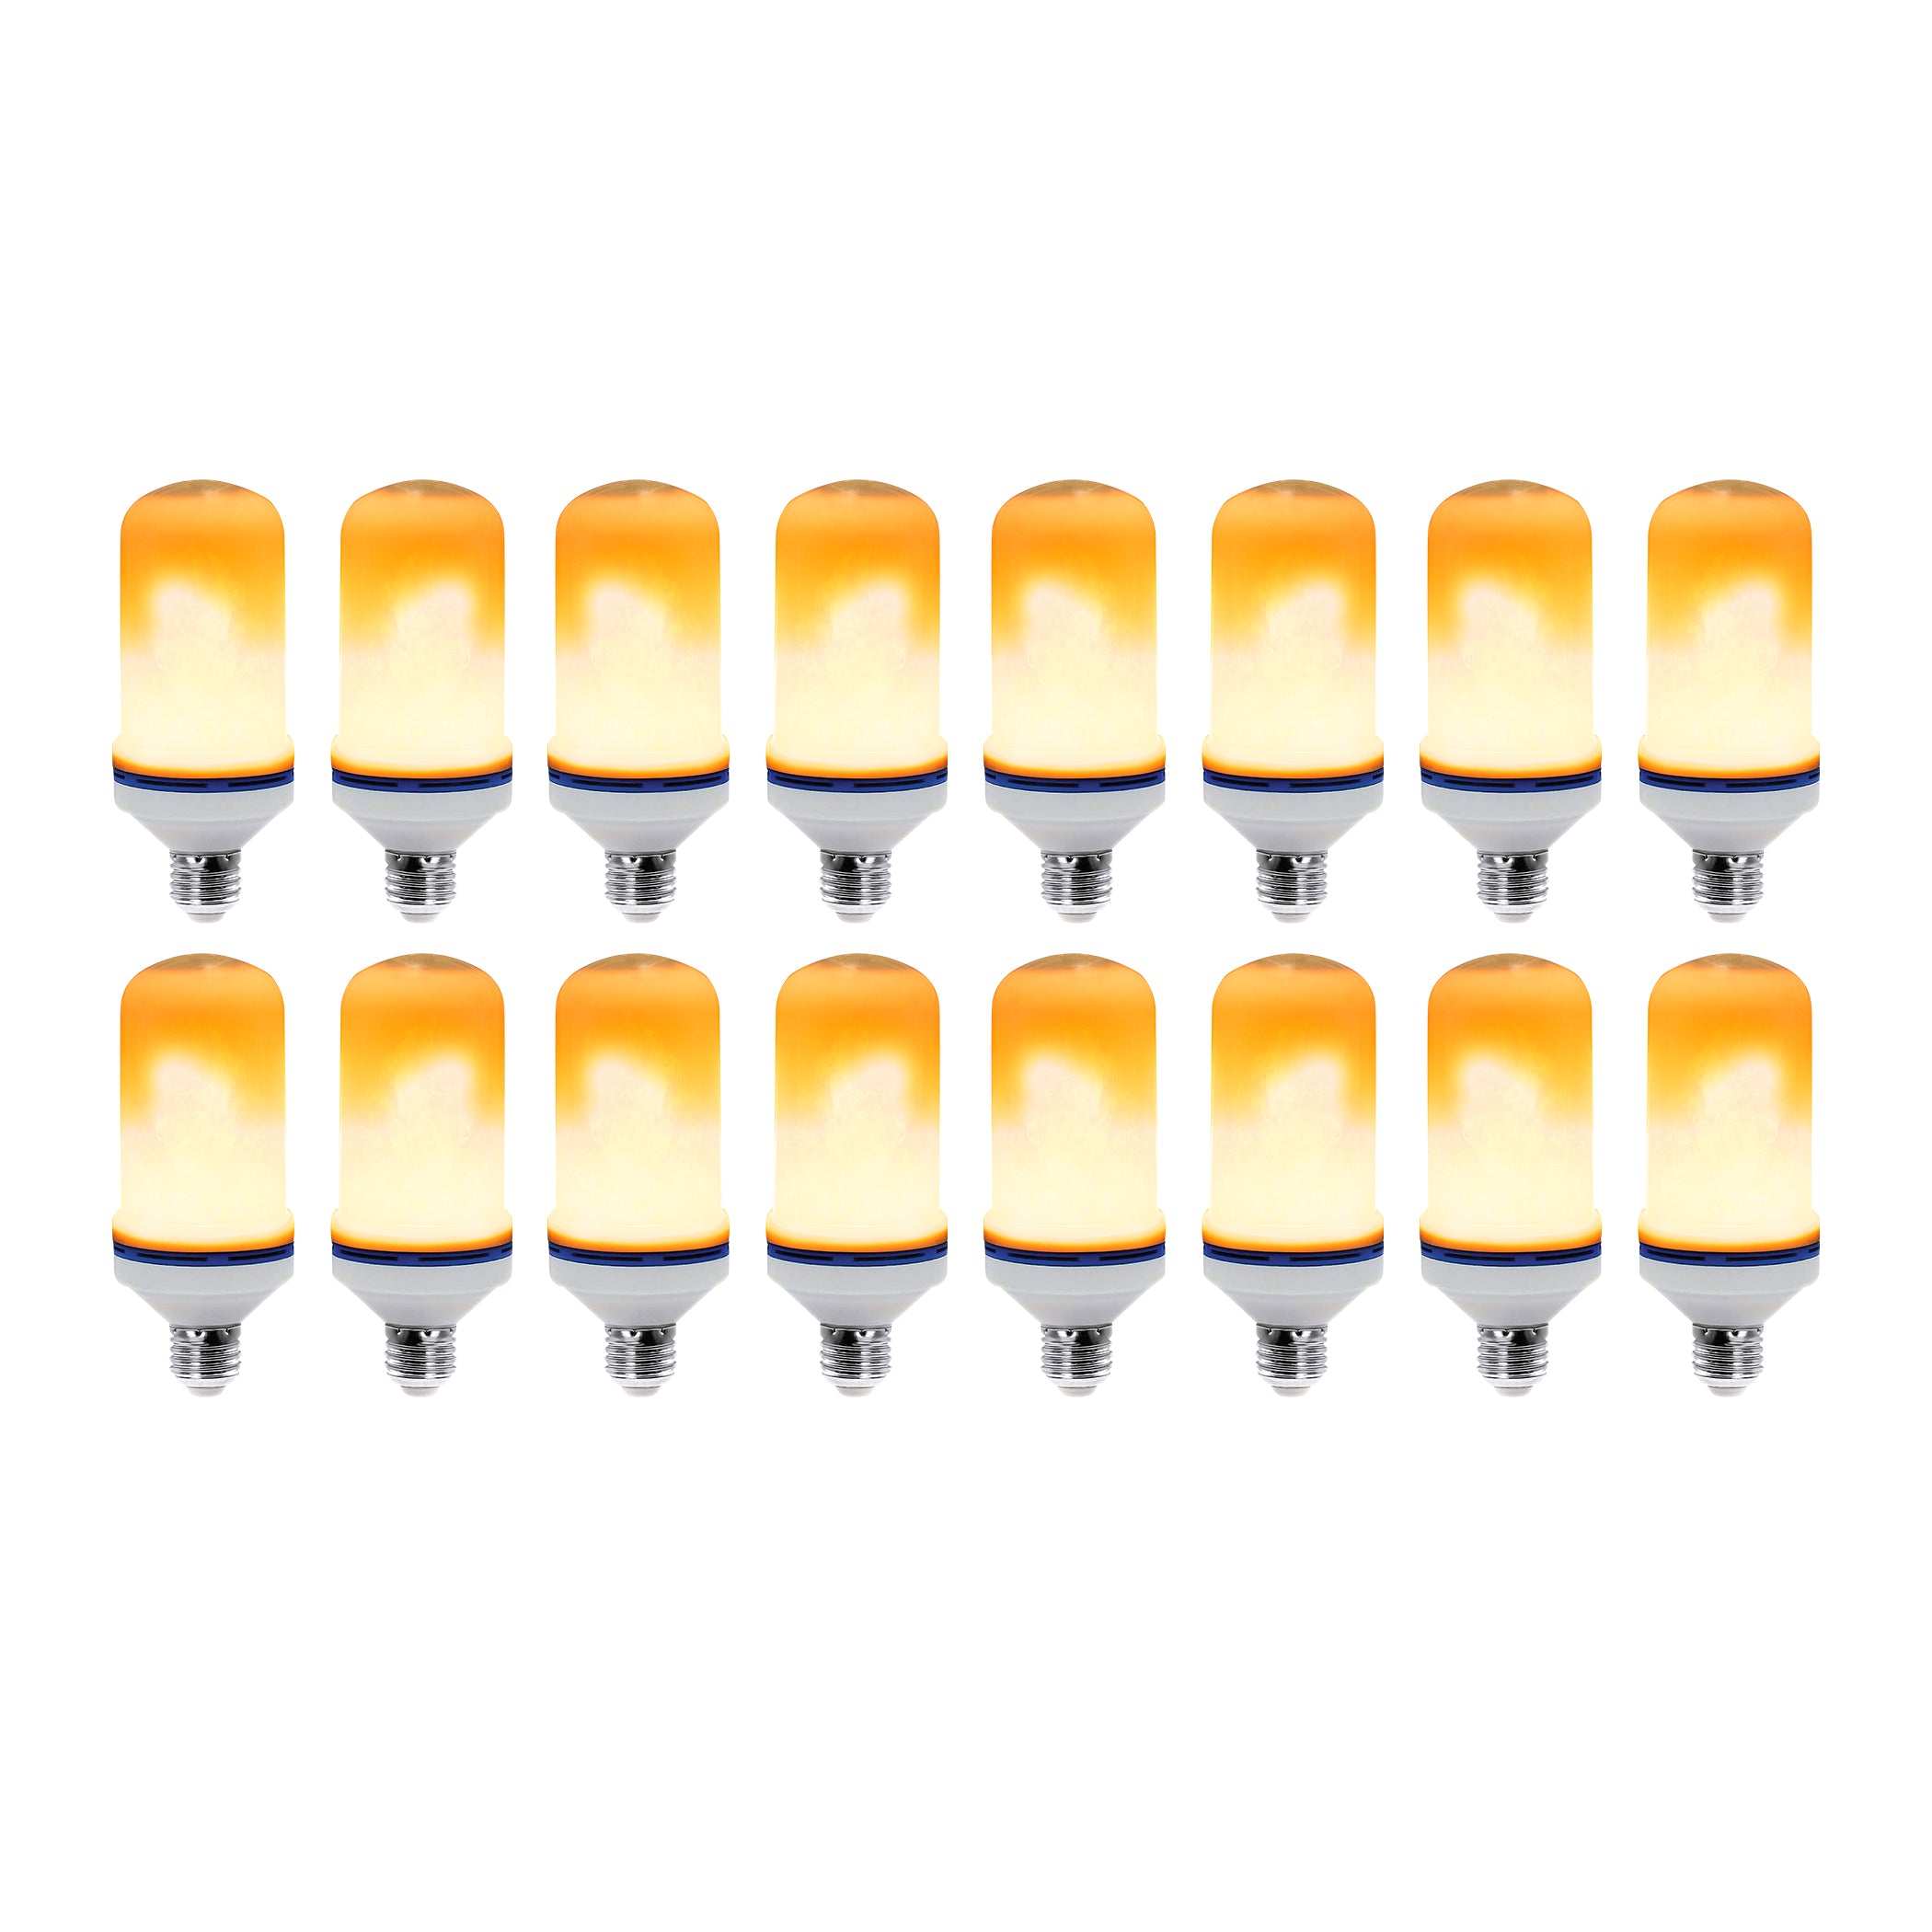 4.5-Watt Orange Flame LED Light Bulb, 40-watt Equivalent, 2-Pack